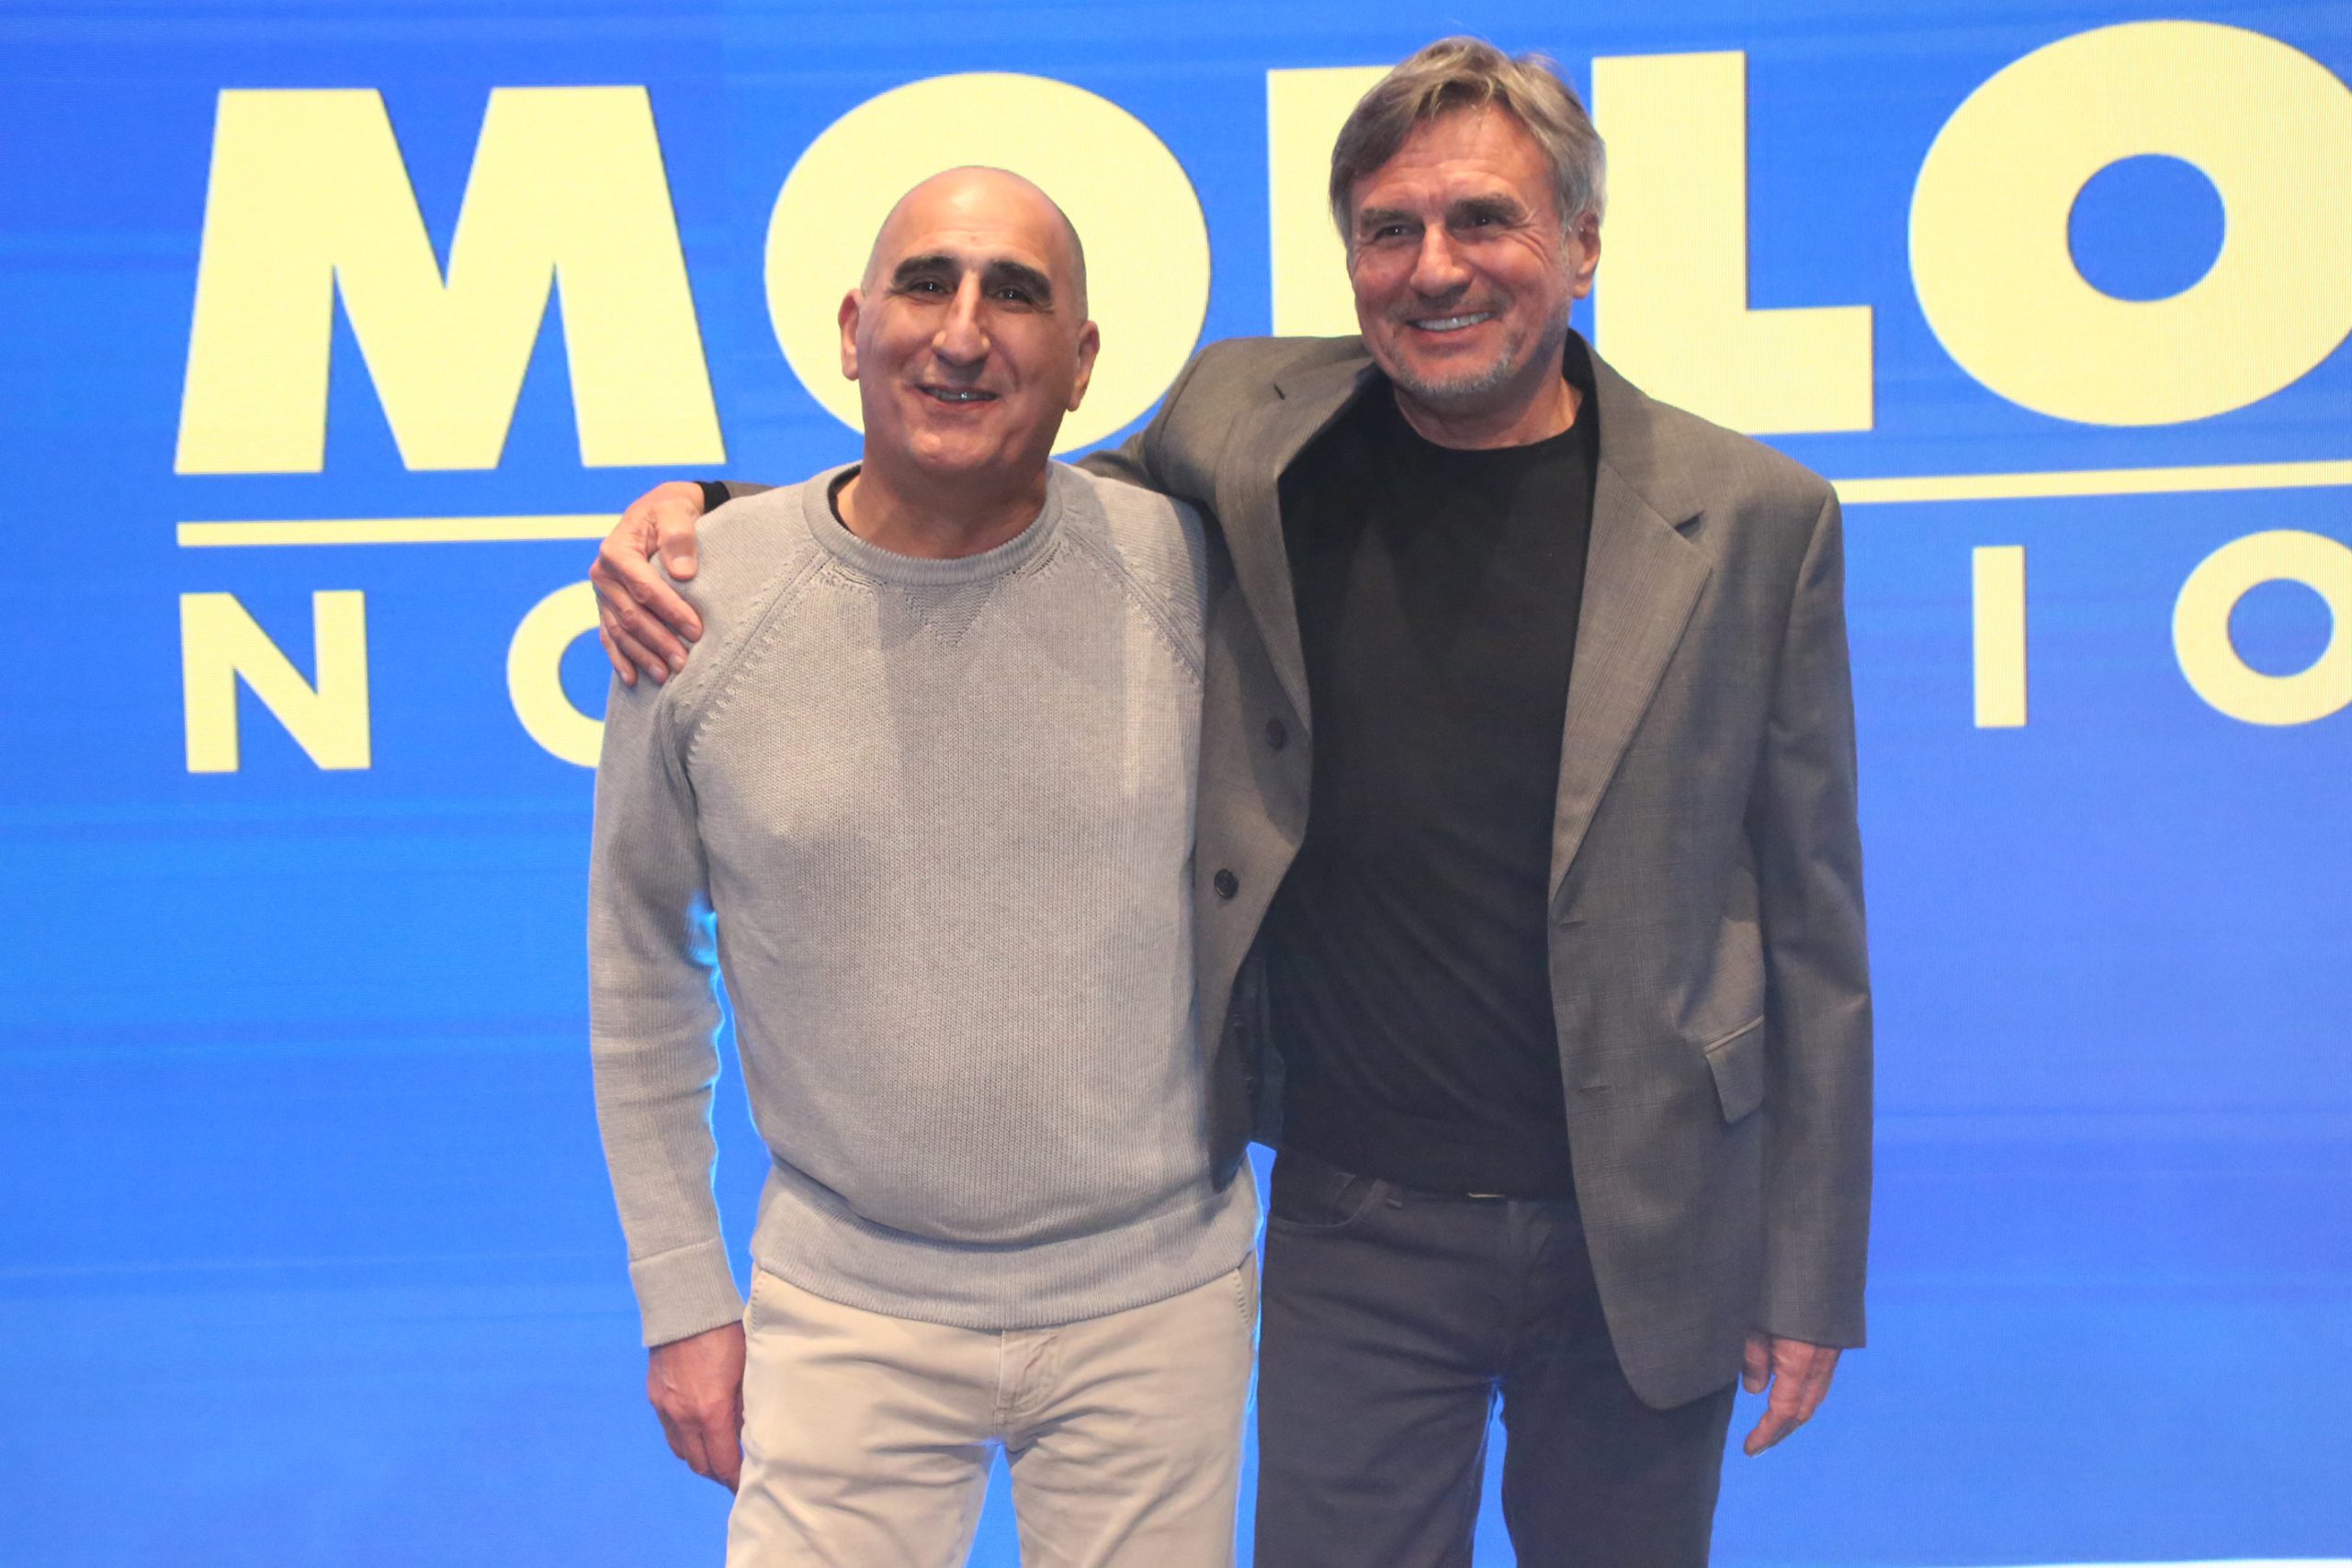 Mollo Noleggio è l'azienda di Mauro e Roberto Mollo